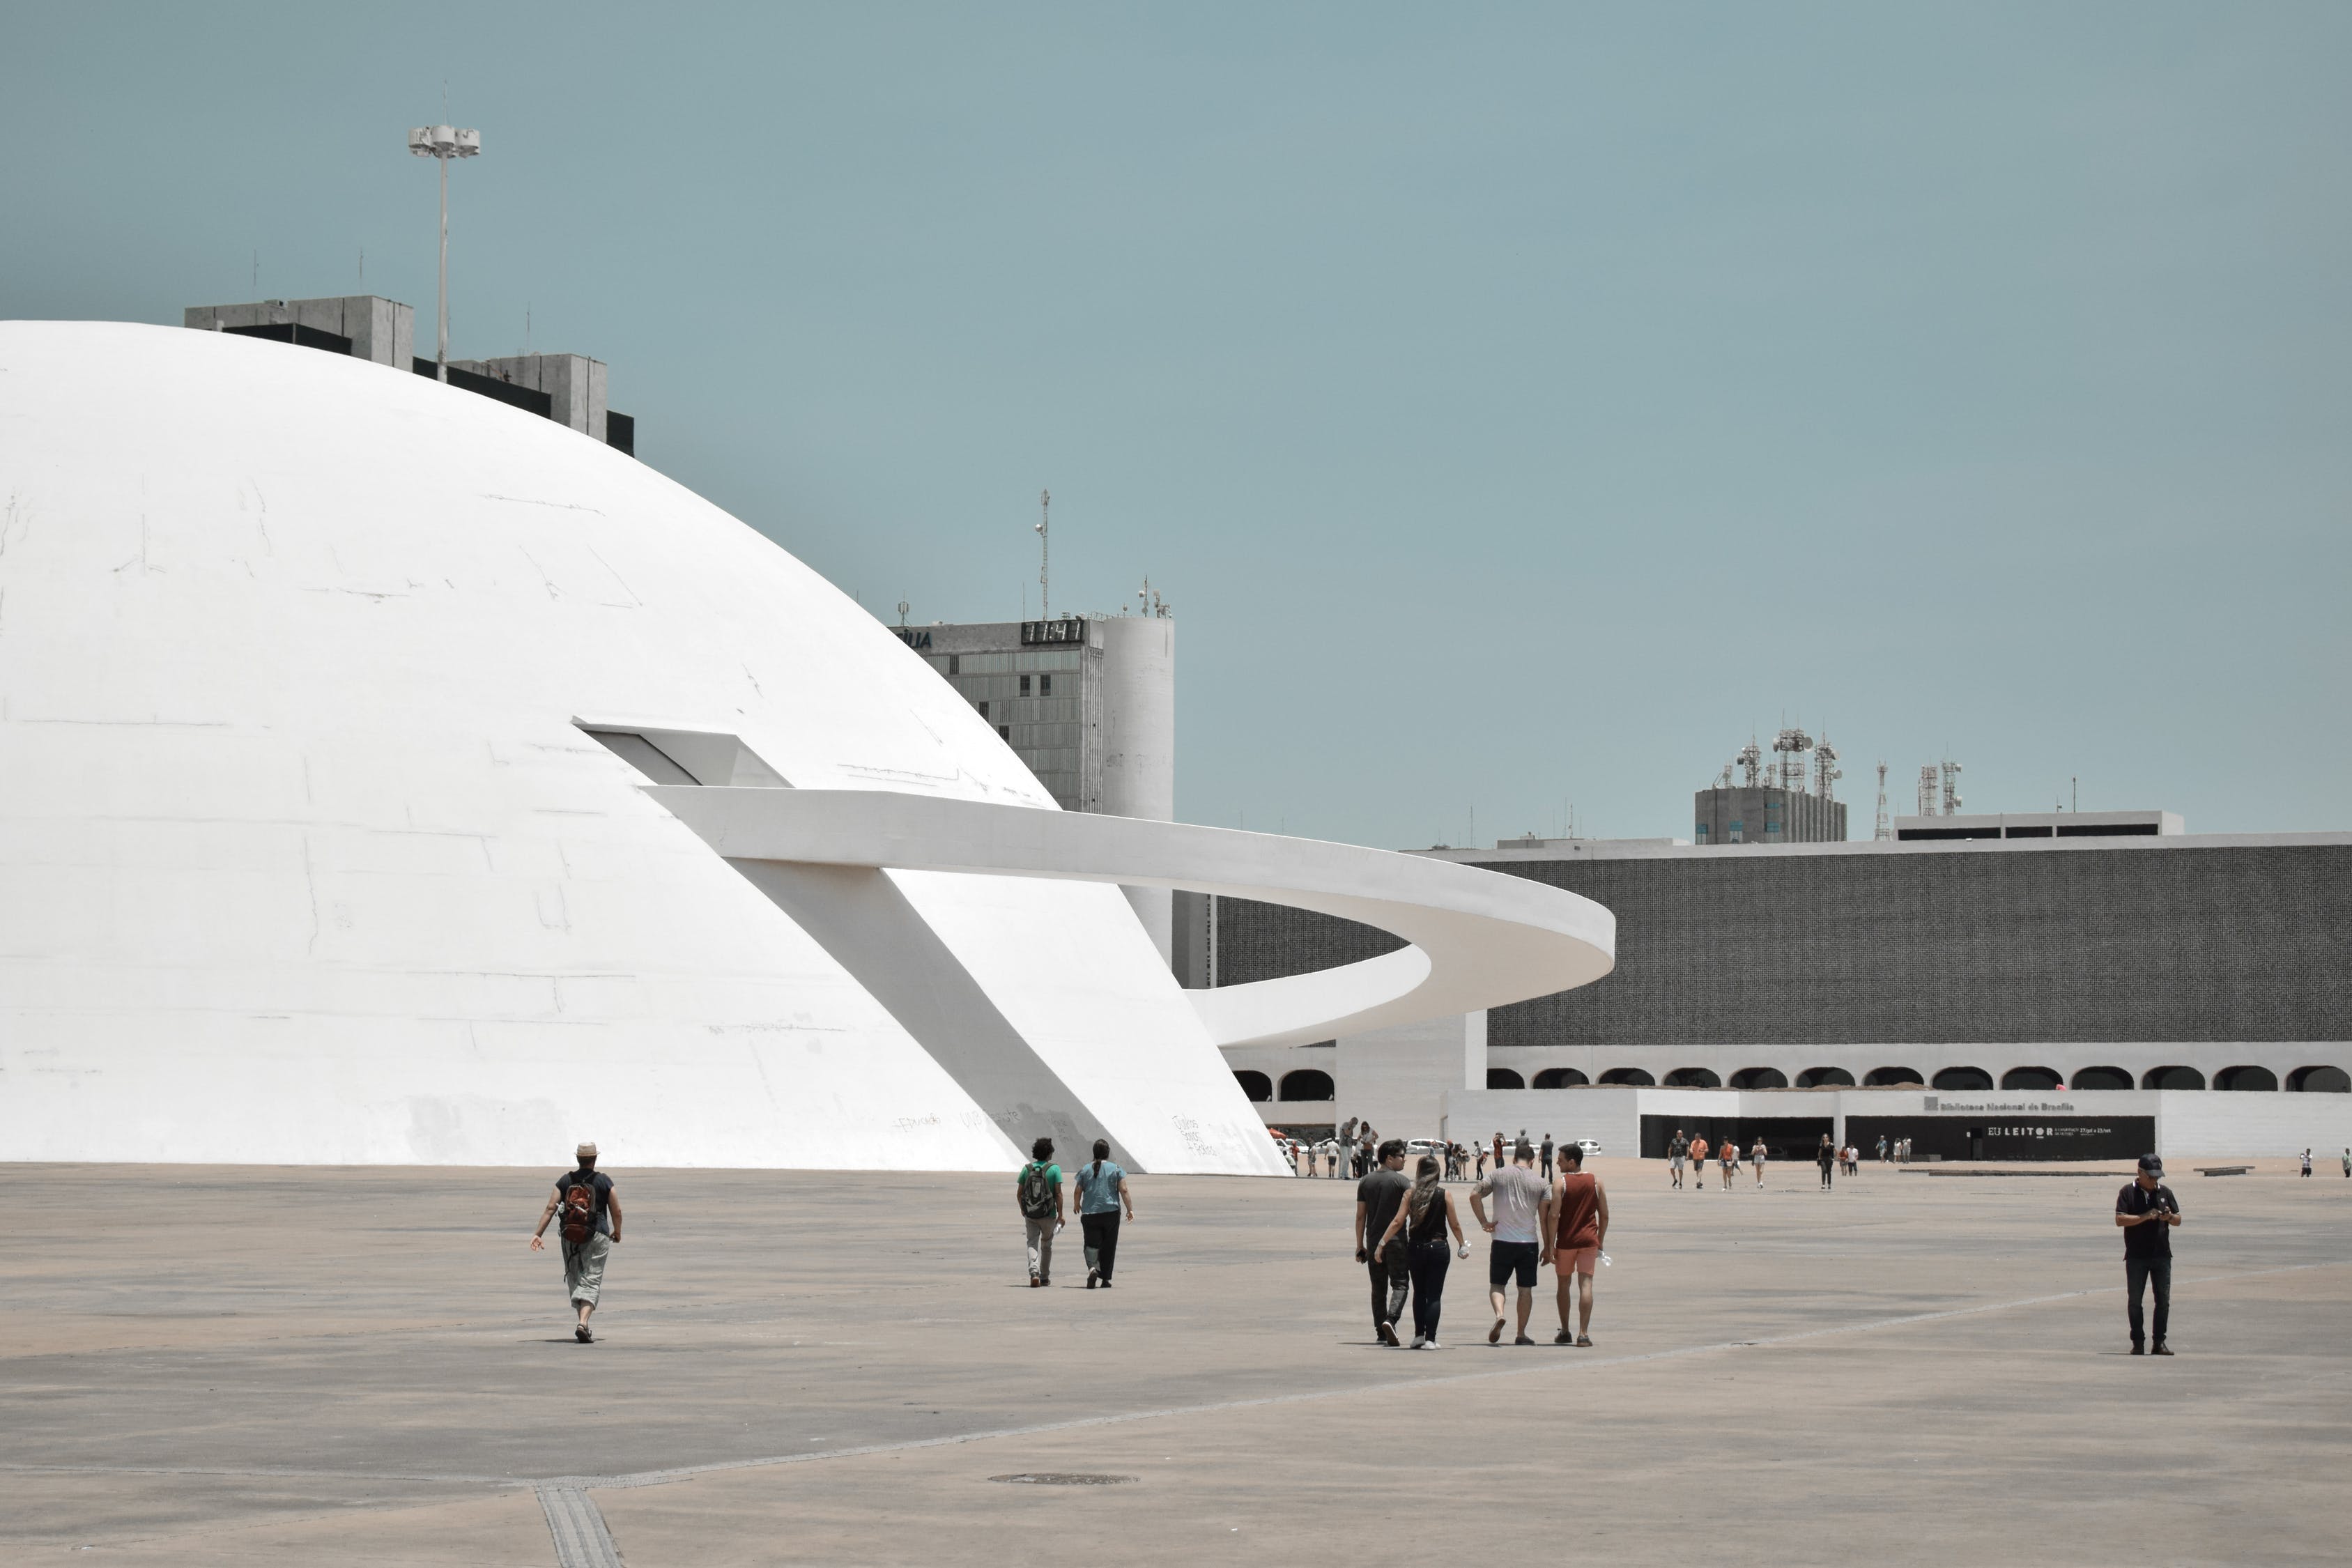 O Museu Nacional Honestino Guimarães foi mais uma obra concebida por Niemeyer; inaugurado em 2006 e uma das últimas marcas deixadas pelo arquiteto (Foto: Matheus Natan/Pexels)